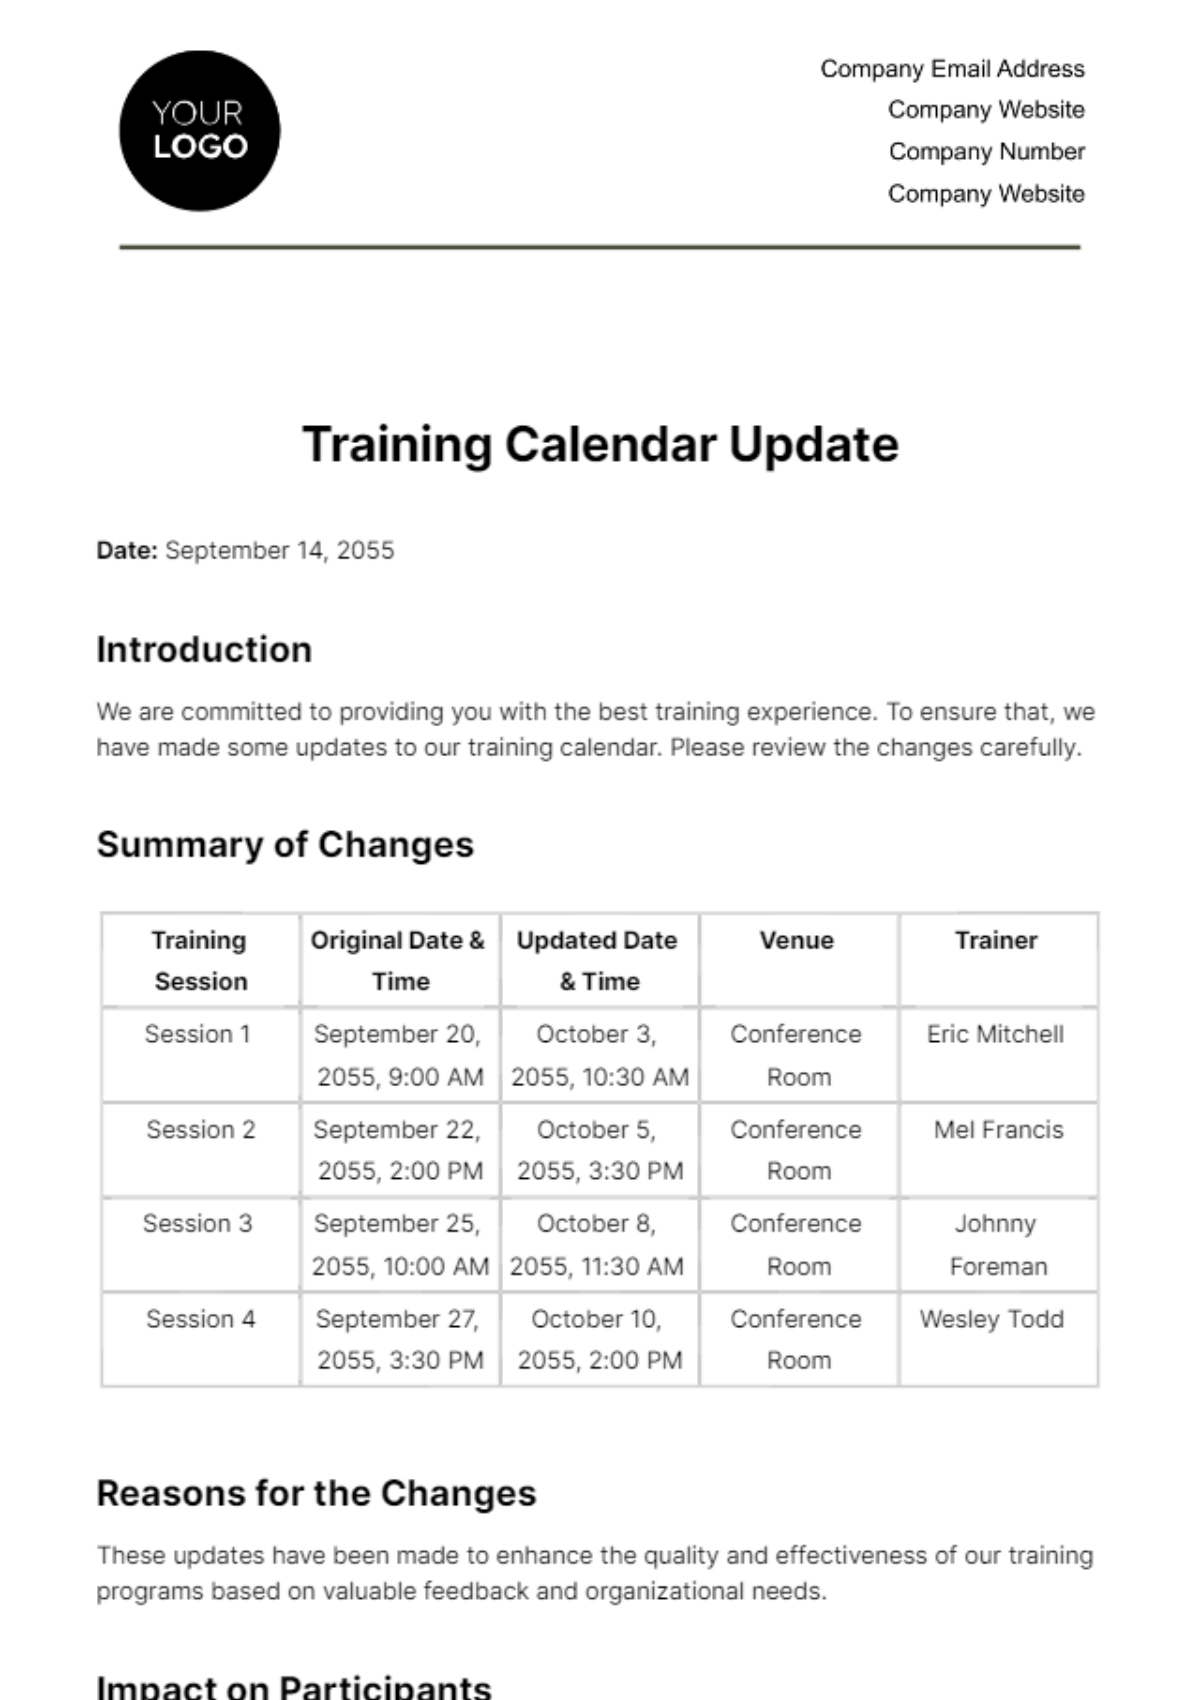 Training Calendar Update HR Template